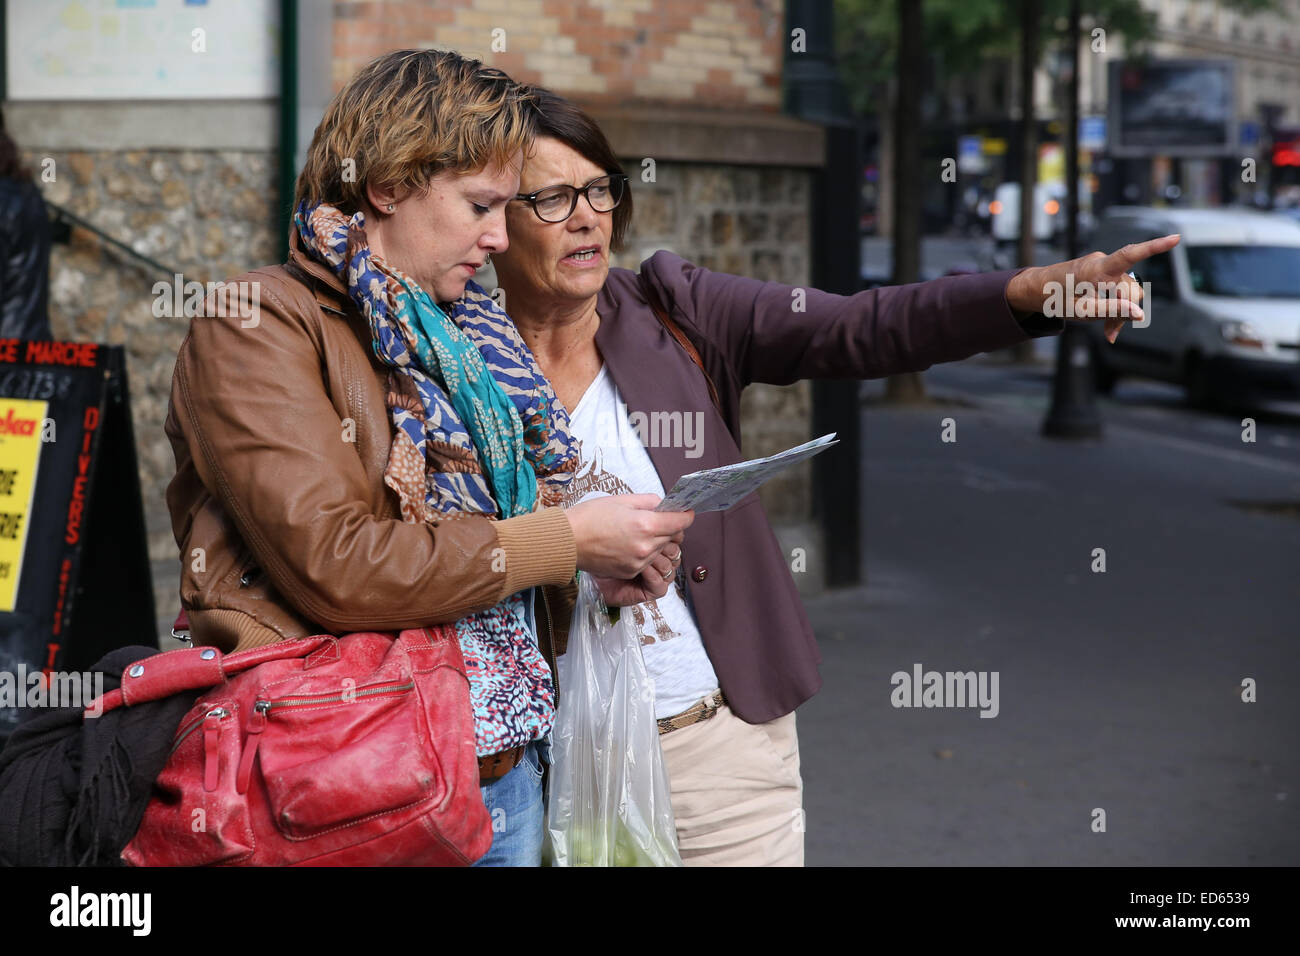 Paris two women tourist checking map Stock Photo